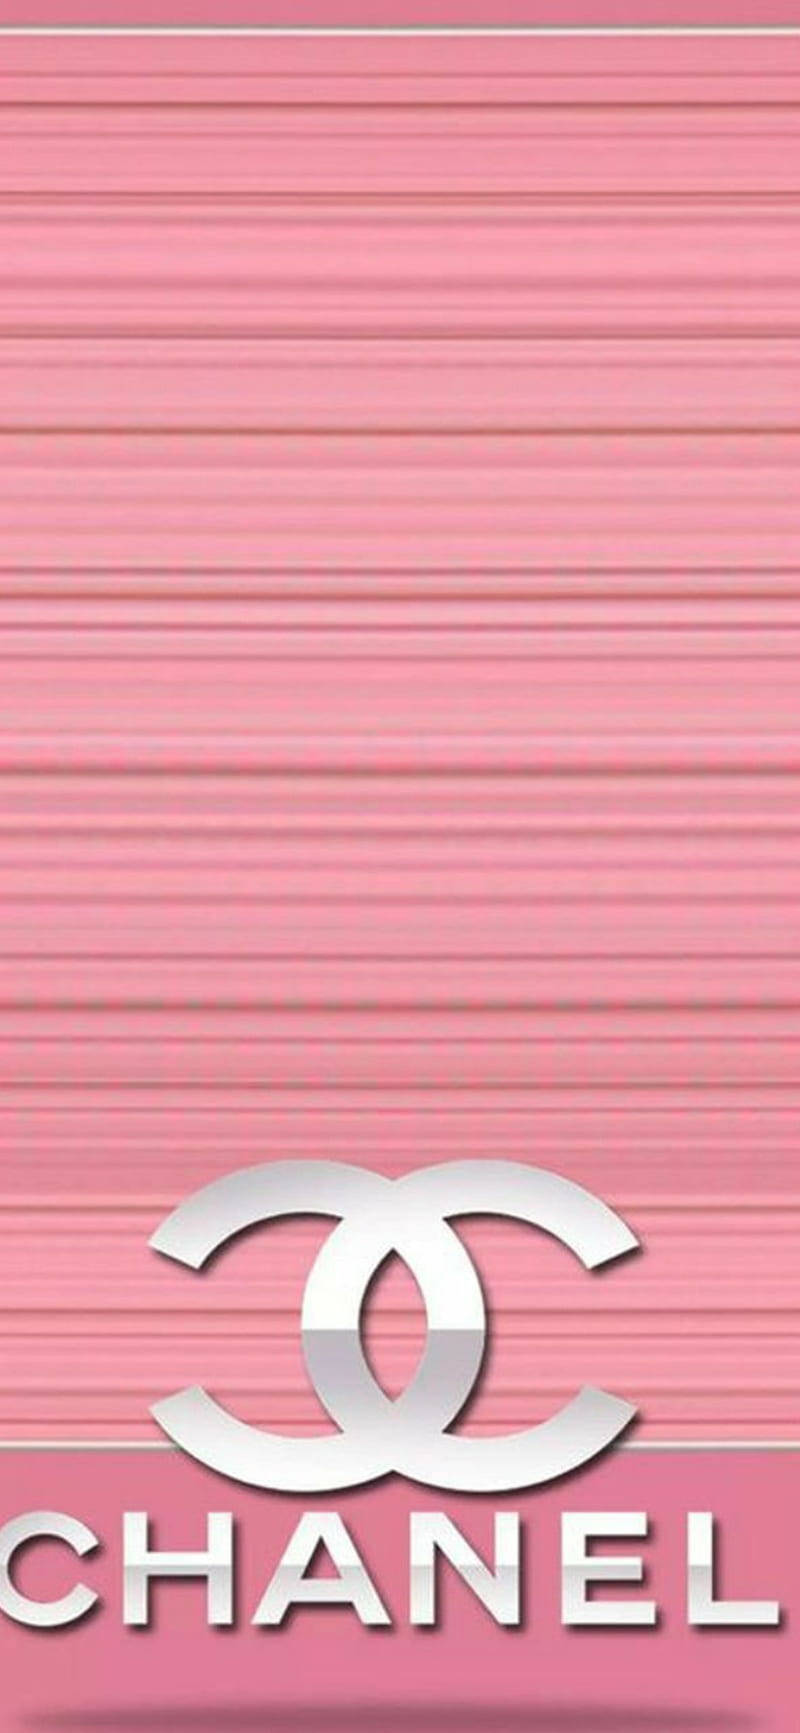 Bildunderbar Rosa Chanel Logo Wallpaper